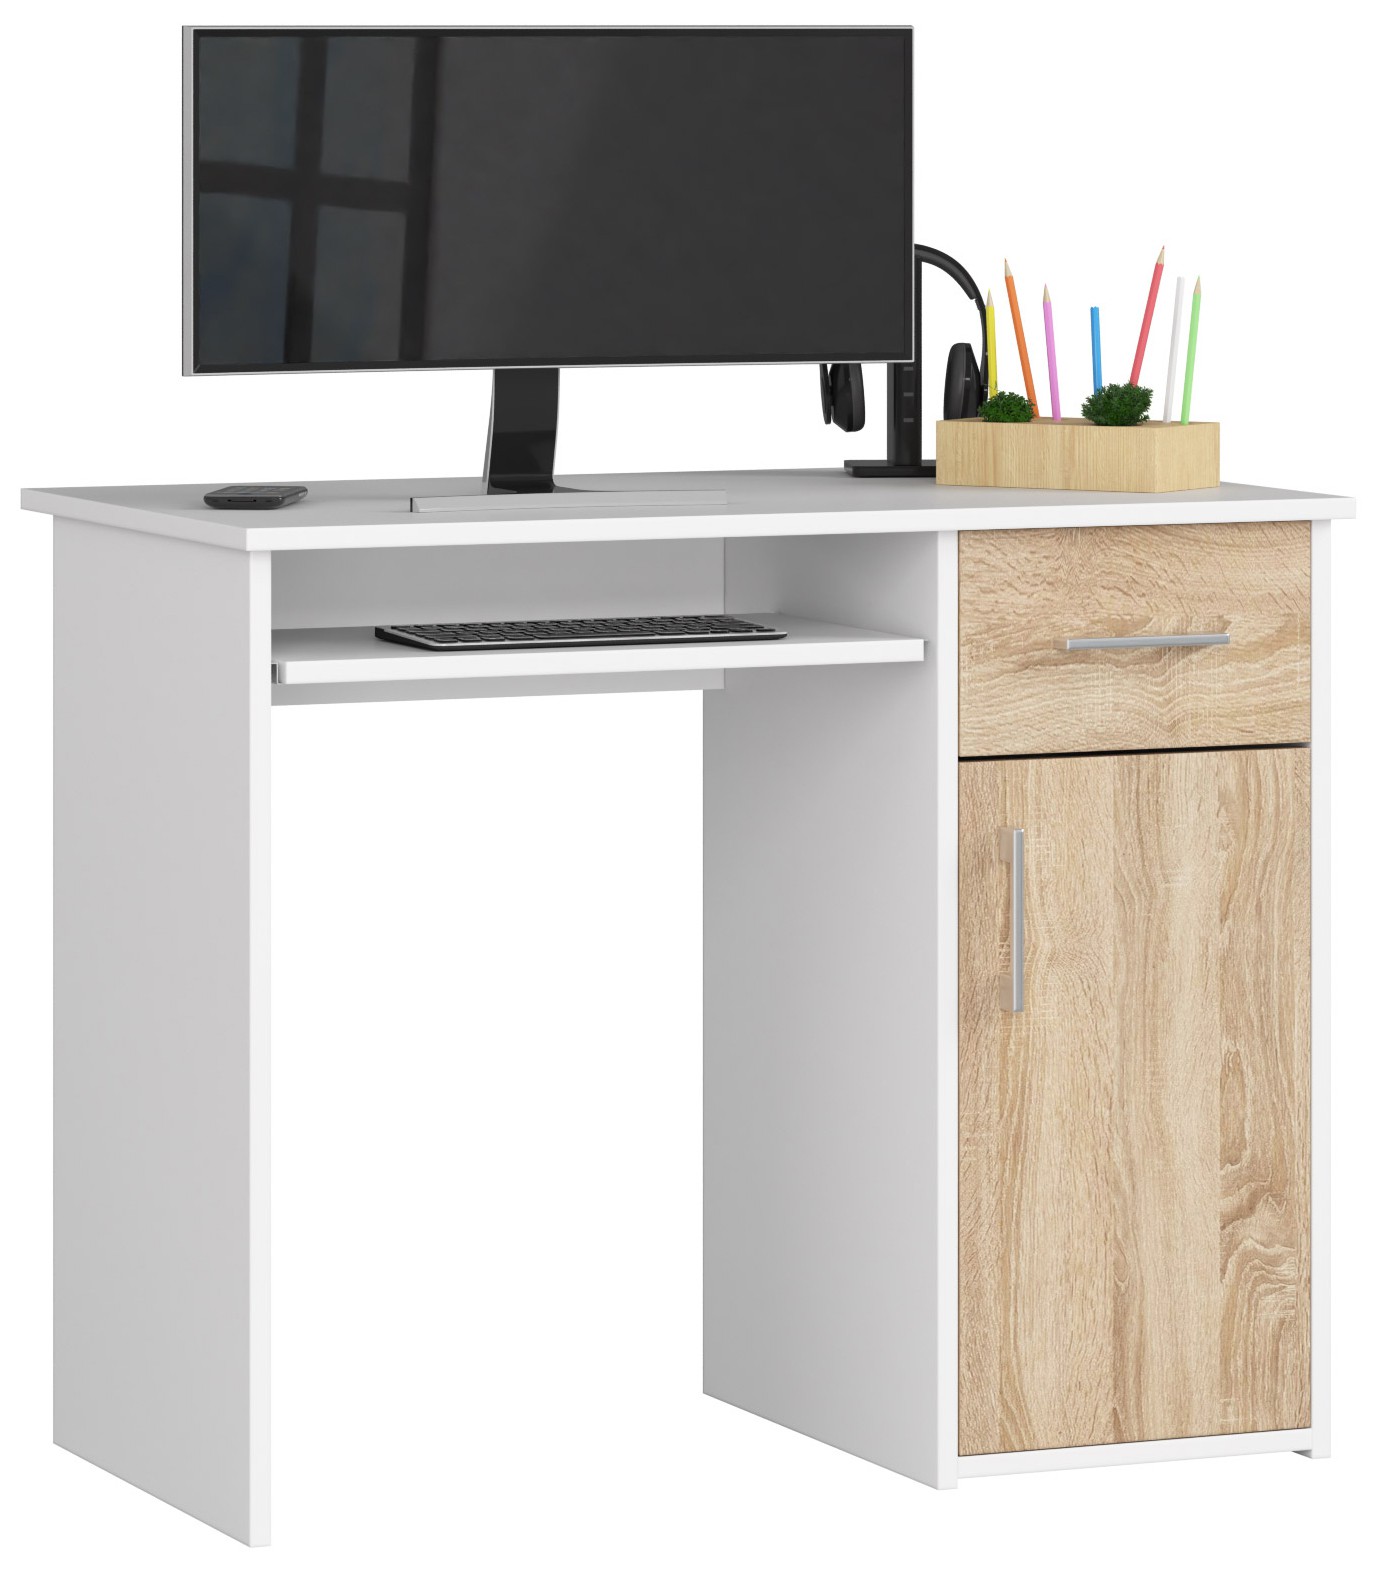 Dizajnový písací stôl MELANIA90, biely / dub Sonoma